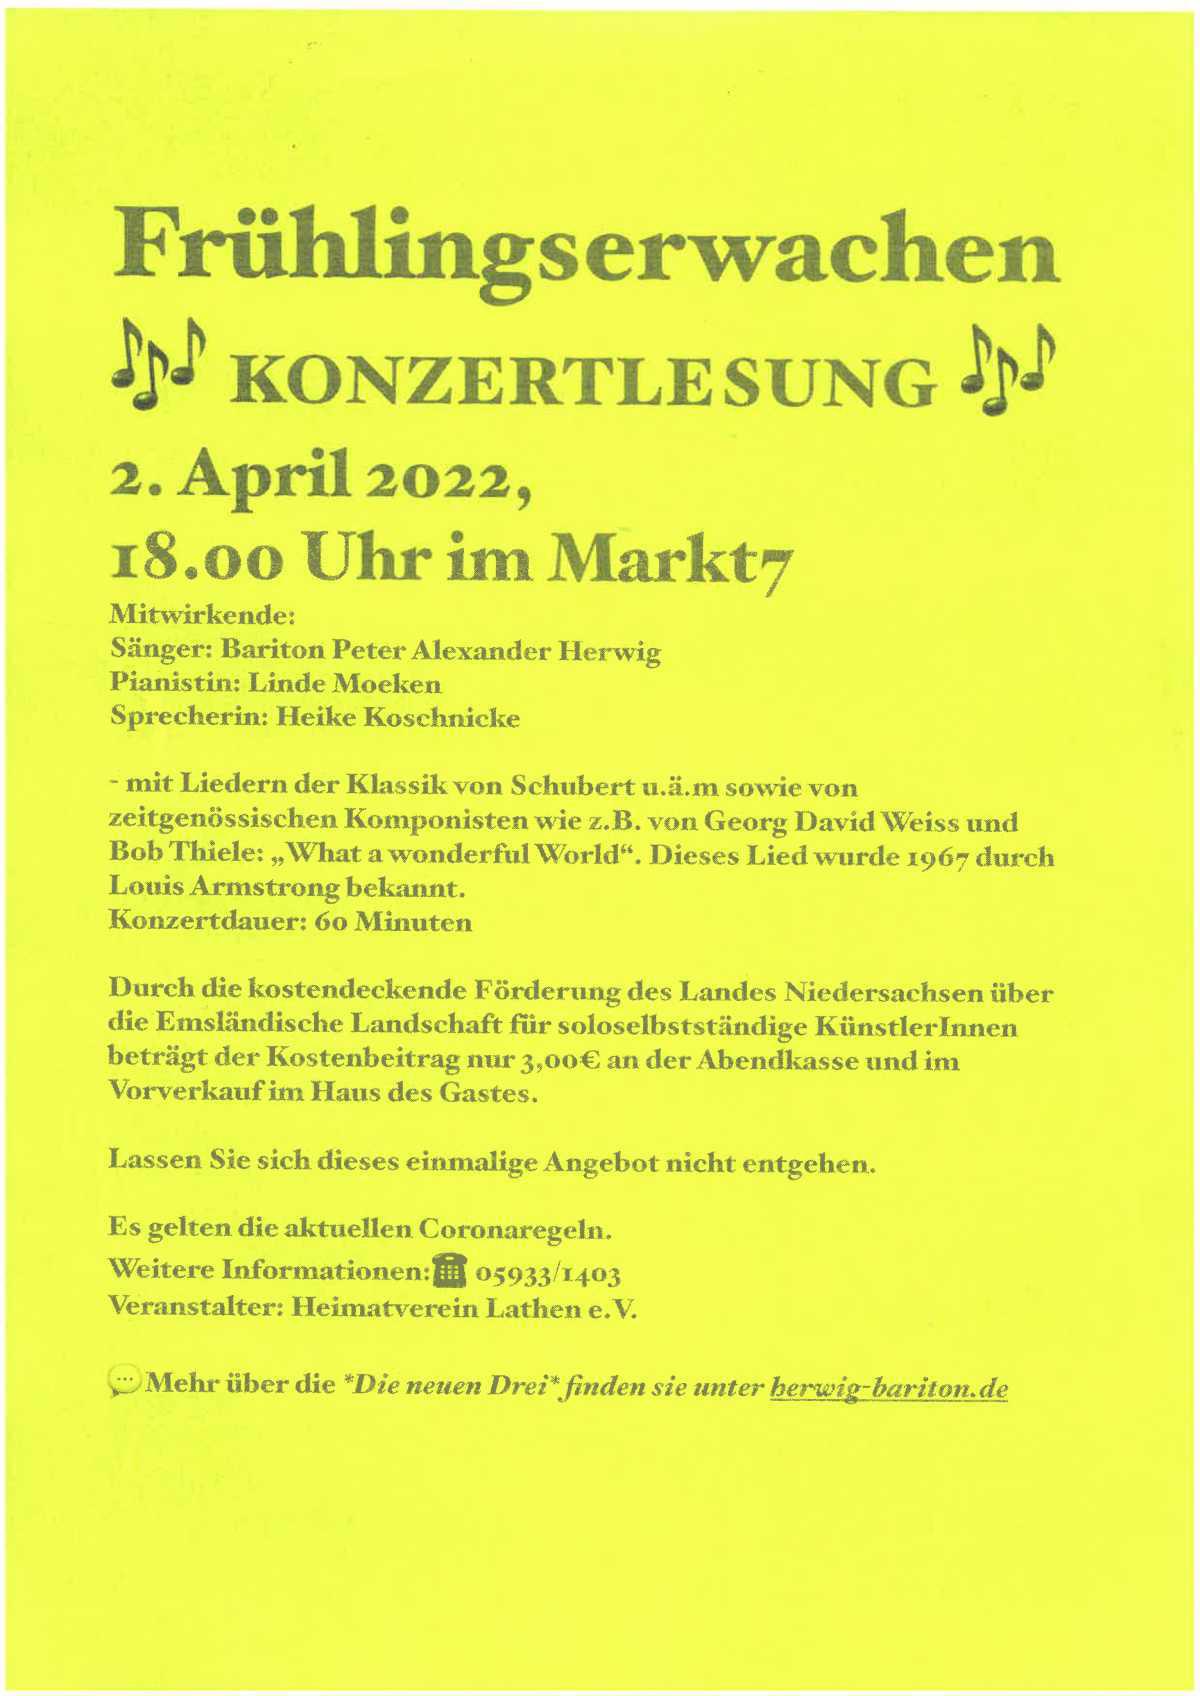 Frühlingserwachen - Ein Liederabend als Konzertlesung am 2. April 2022, 18:00 Uhr im Markt 7